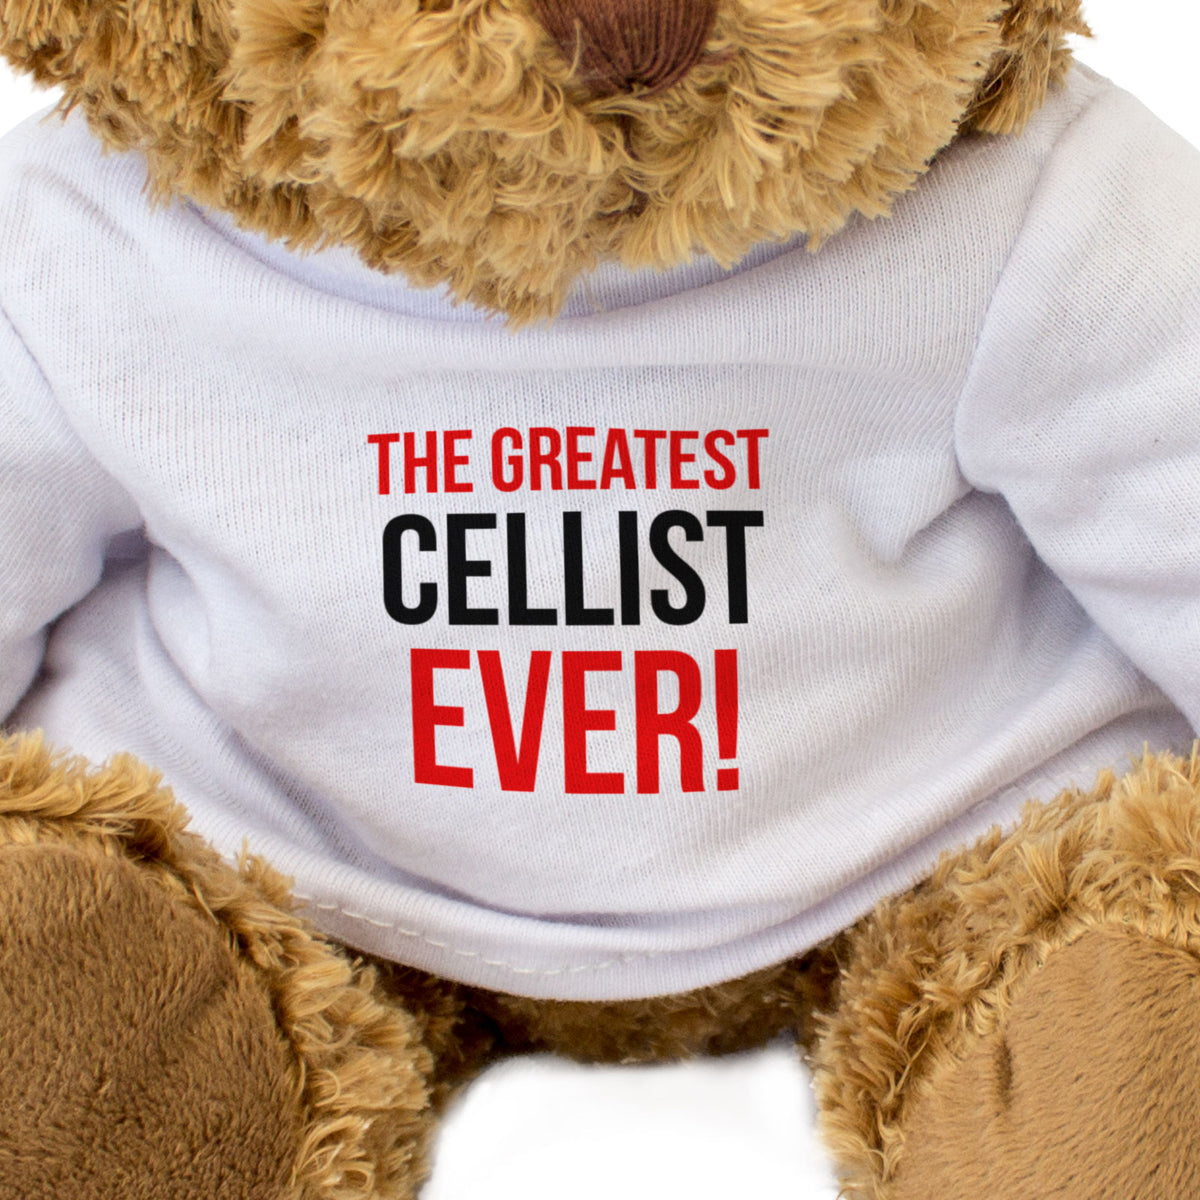 The Greatest Cellist Ever - Teddy Bear